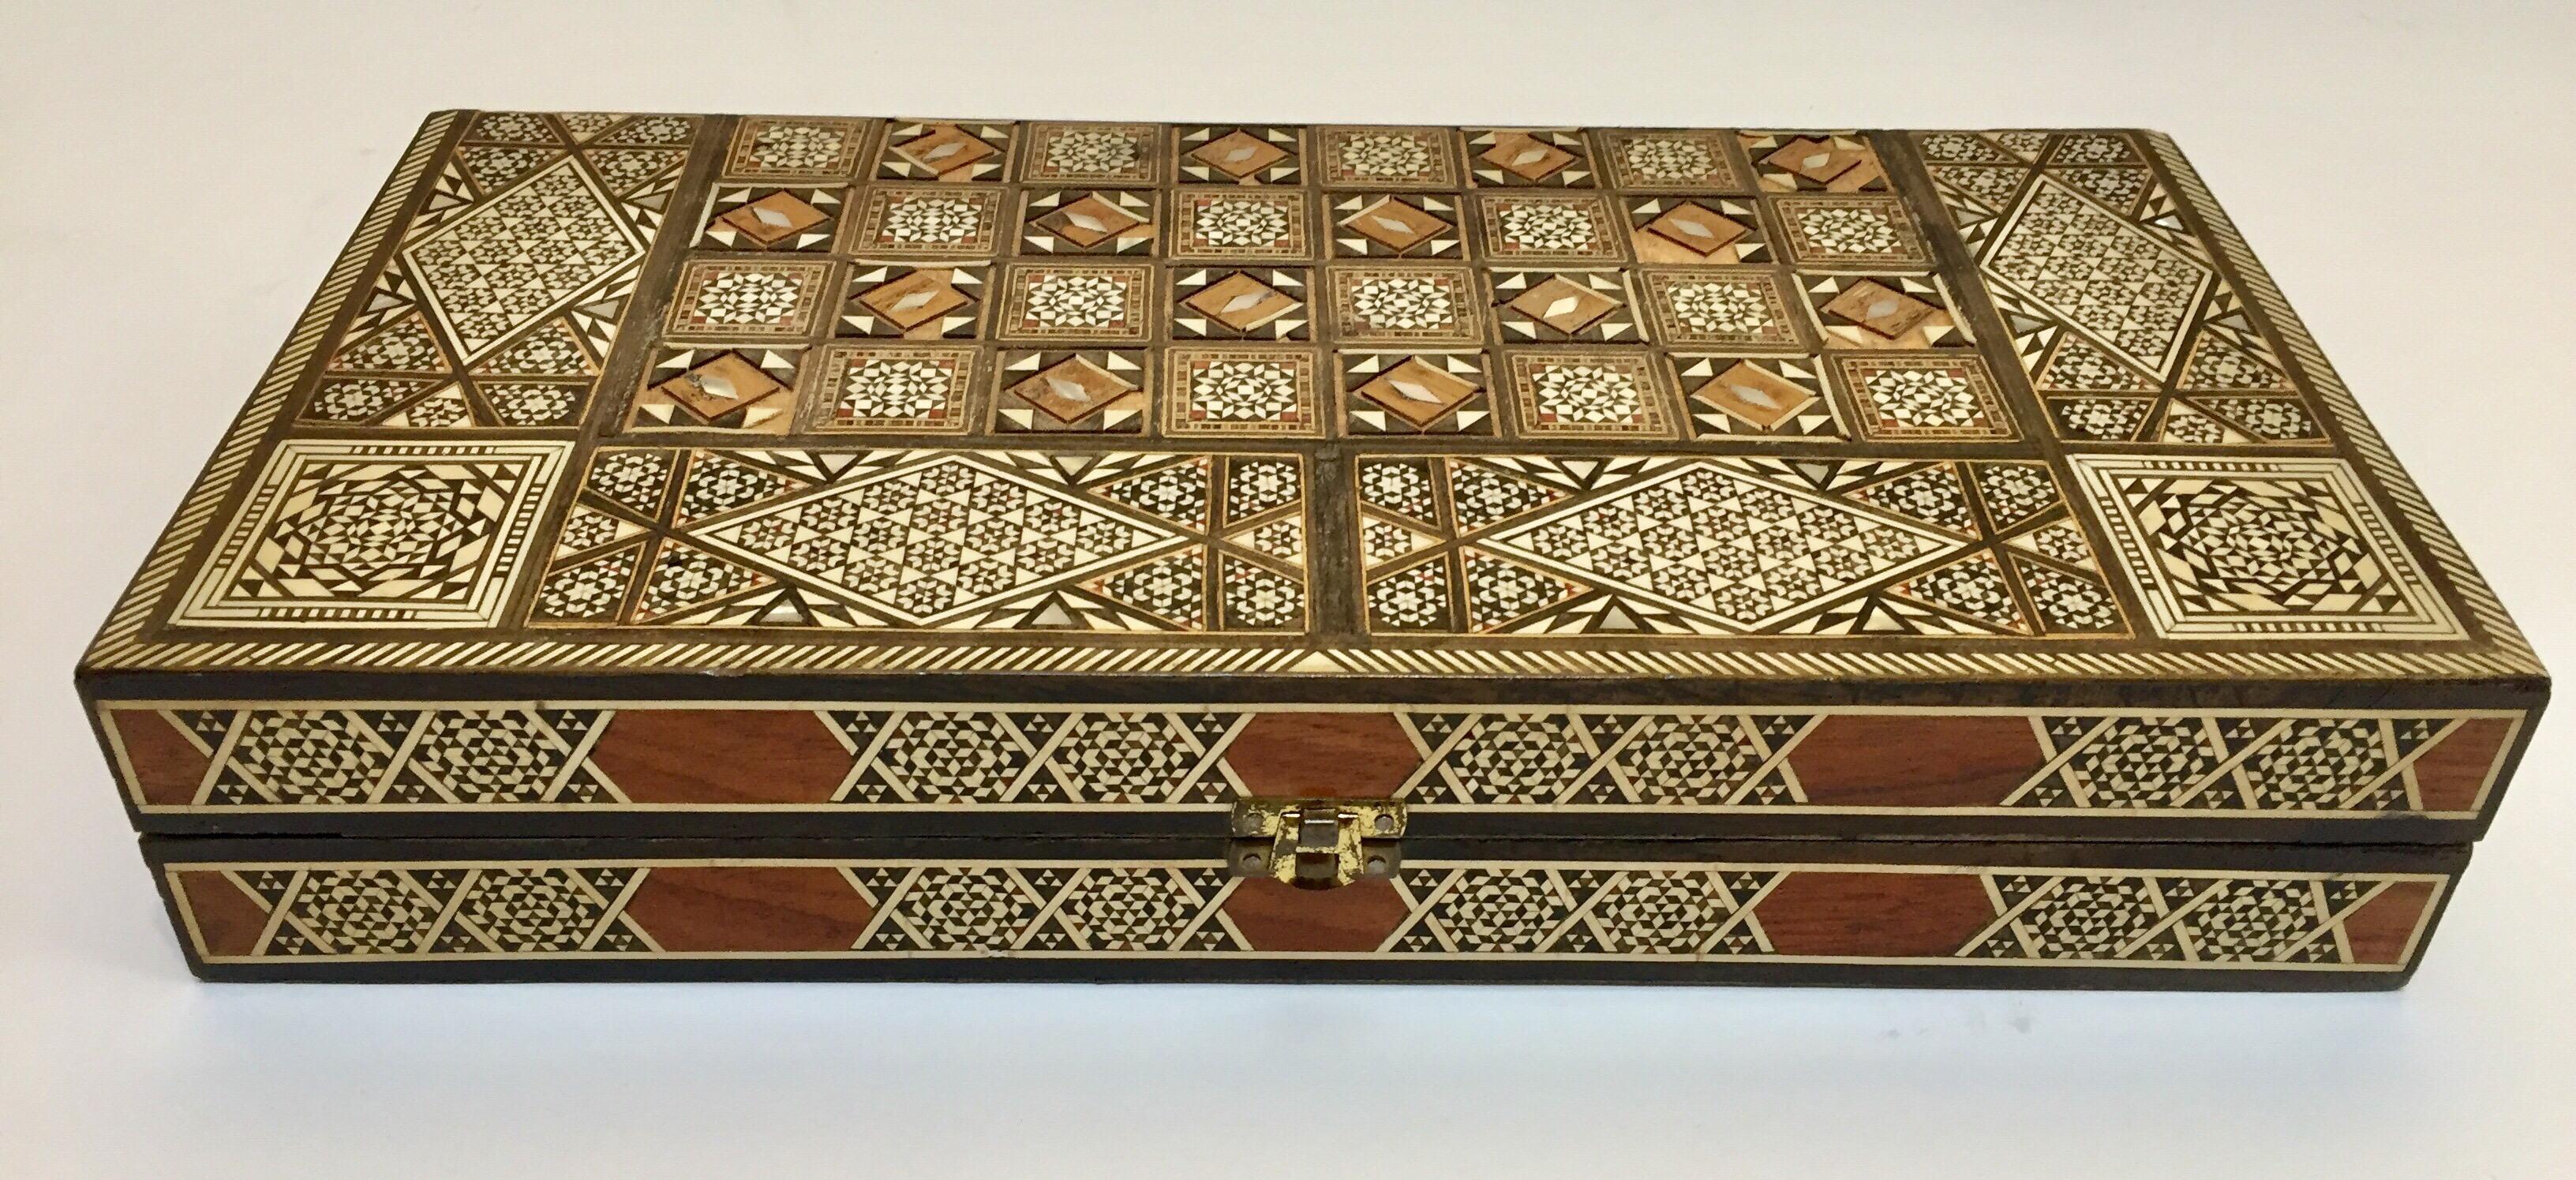 Marqueterie Vieux grand jeu complet de backgammon et d'echecs en mosaique incrustee syrienne